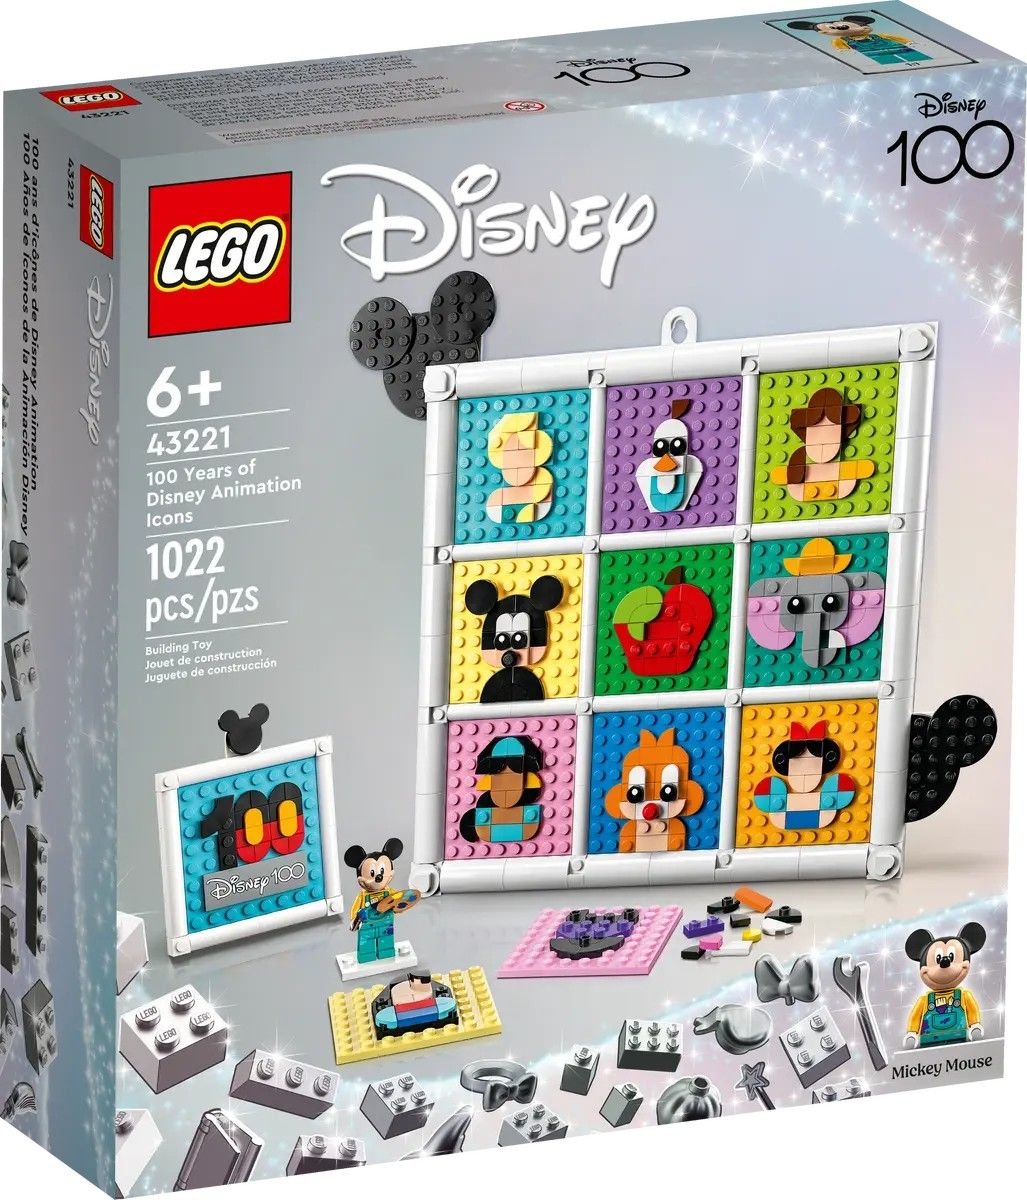 100 Years of Disney Animation Icons LEGO Disney 43221